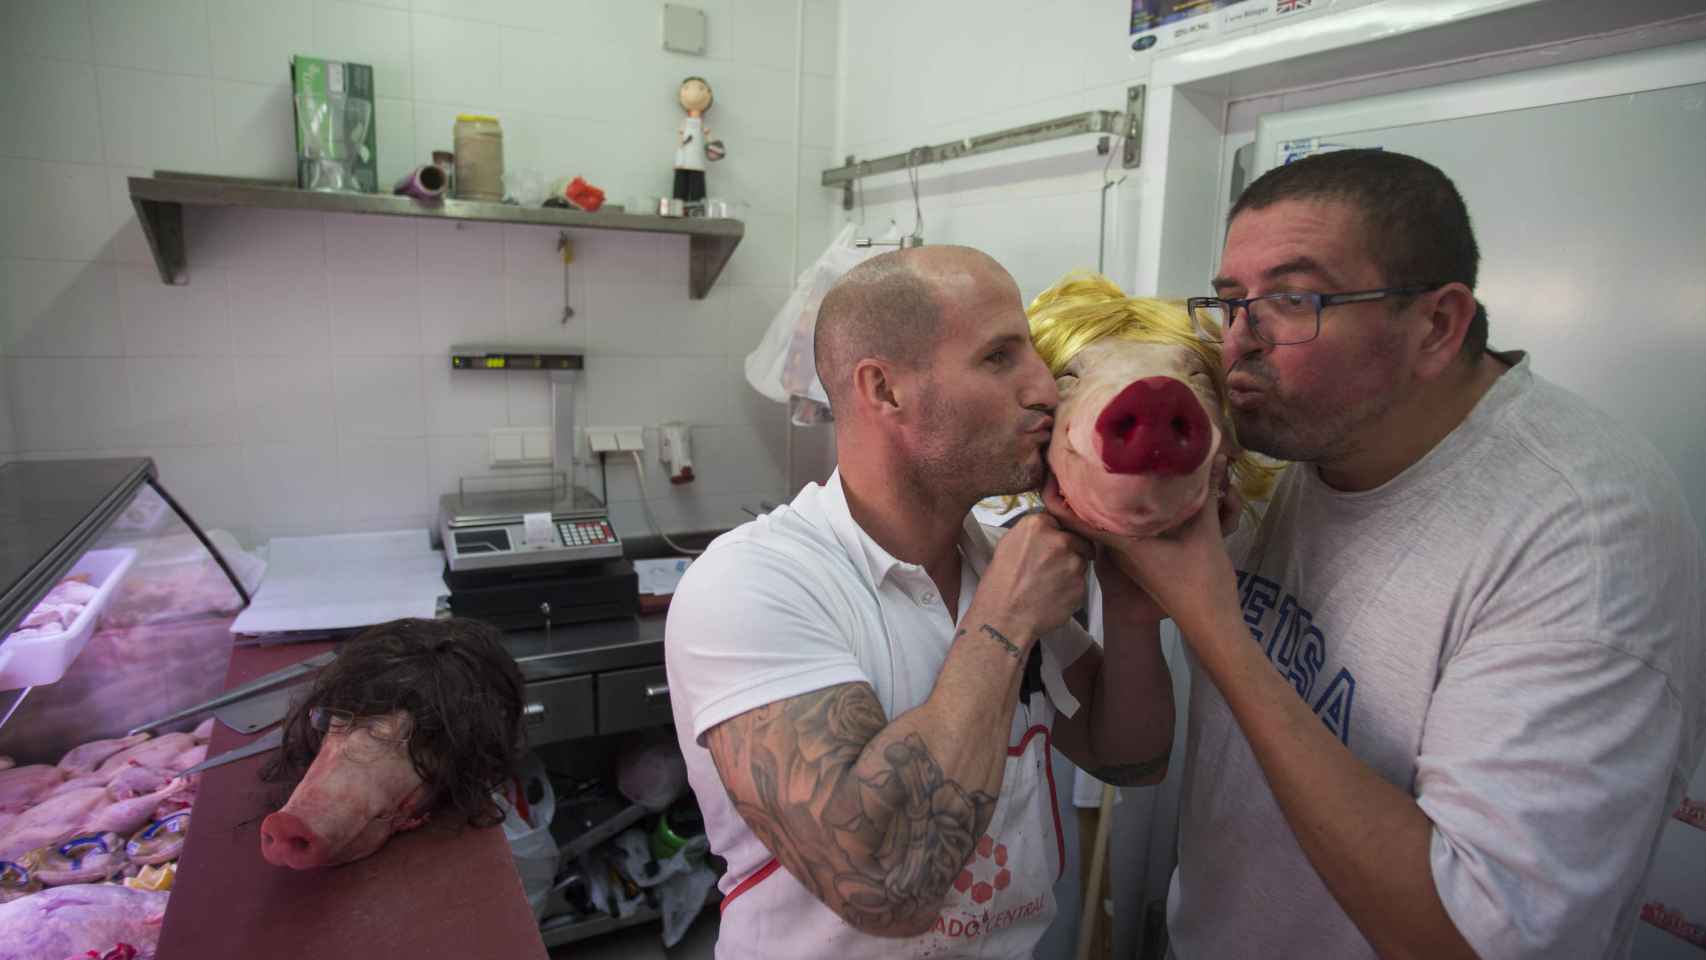 Los carniceros Javier Casado y Daniel Espinosa. Foto Fernando Ruso.